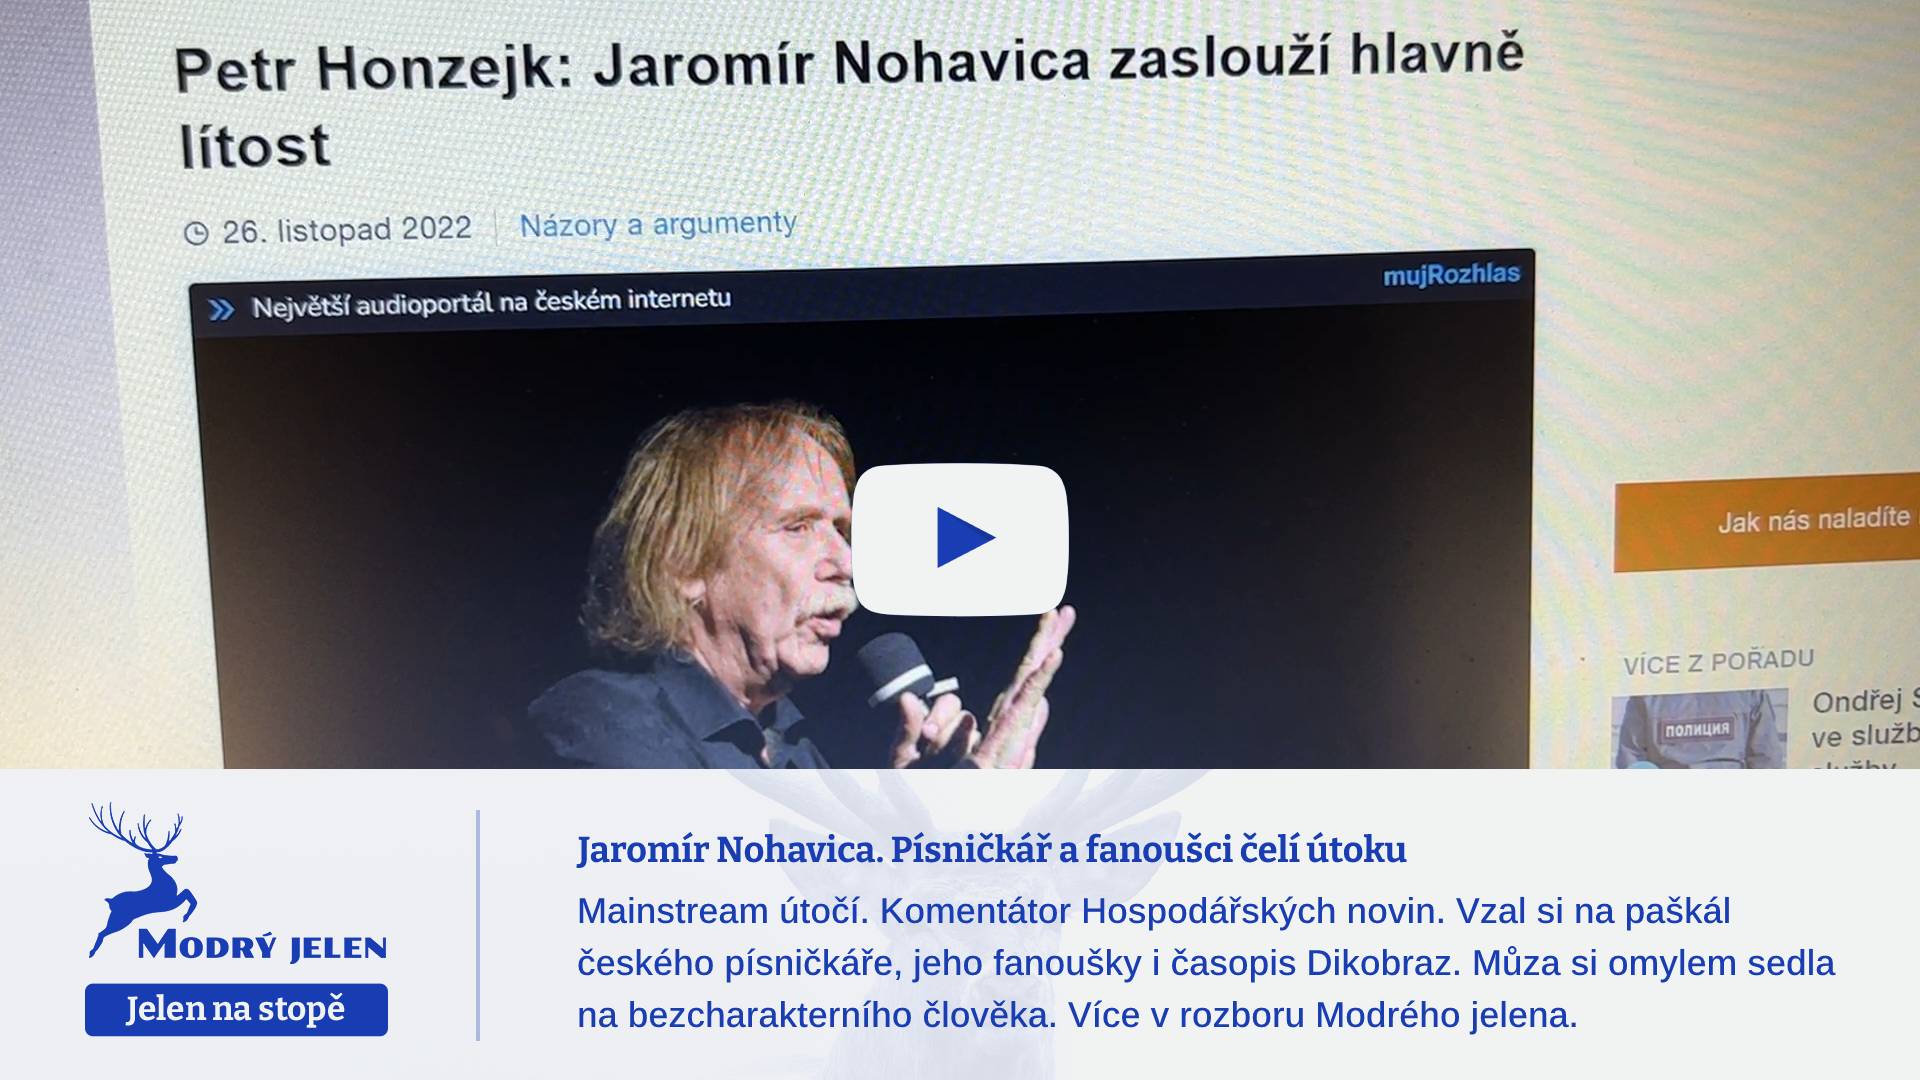 Jaromír Nohavica. Písničkář a fanoušci čelí útoku